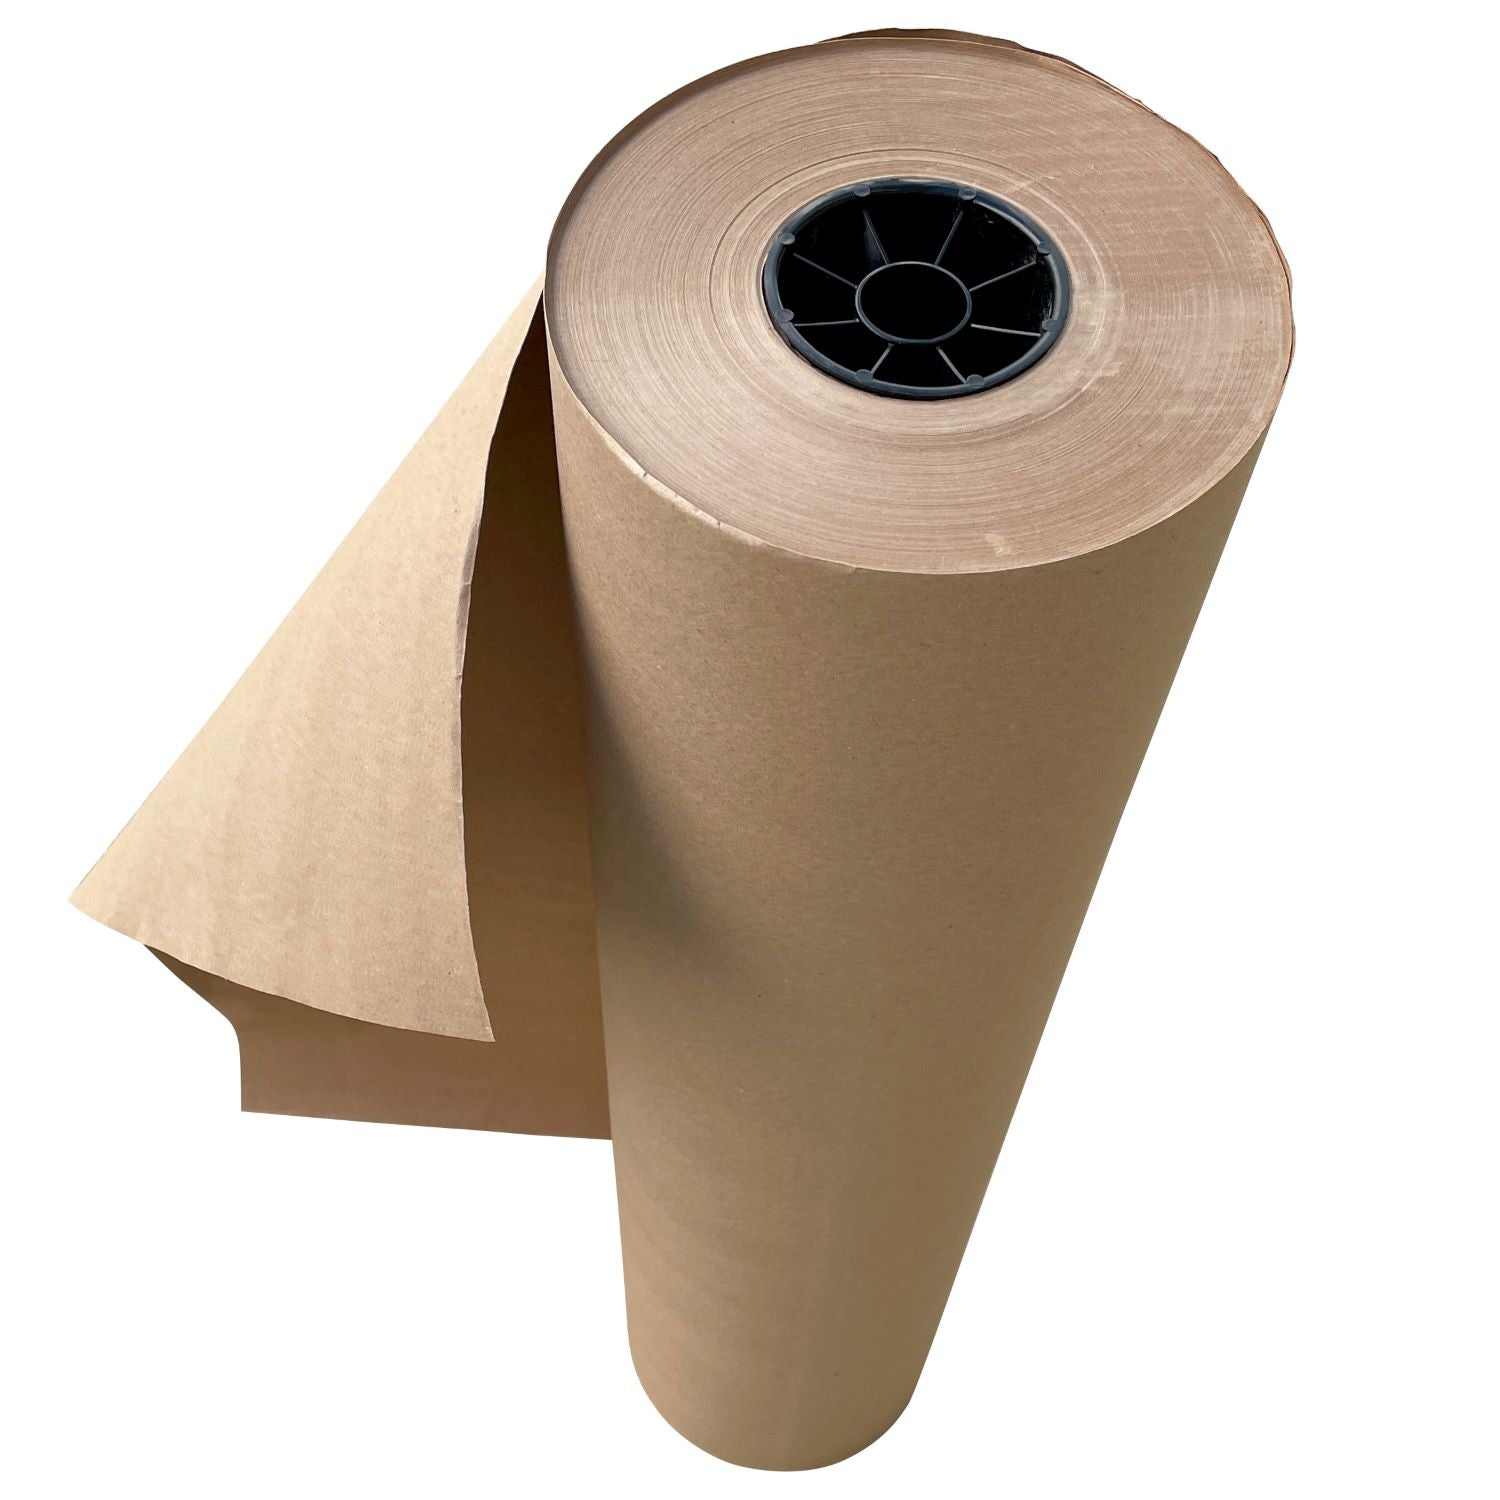 Waxed Kraft Paper Rolls, 60 Wide - 30 lb.